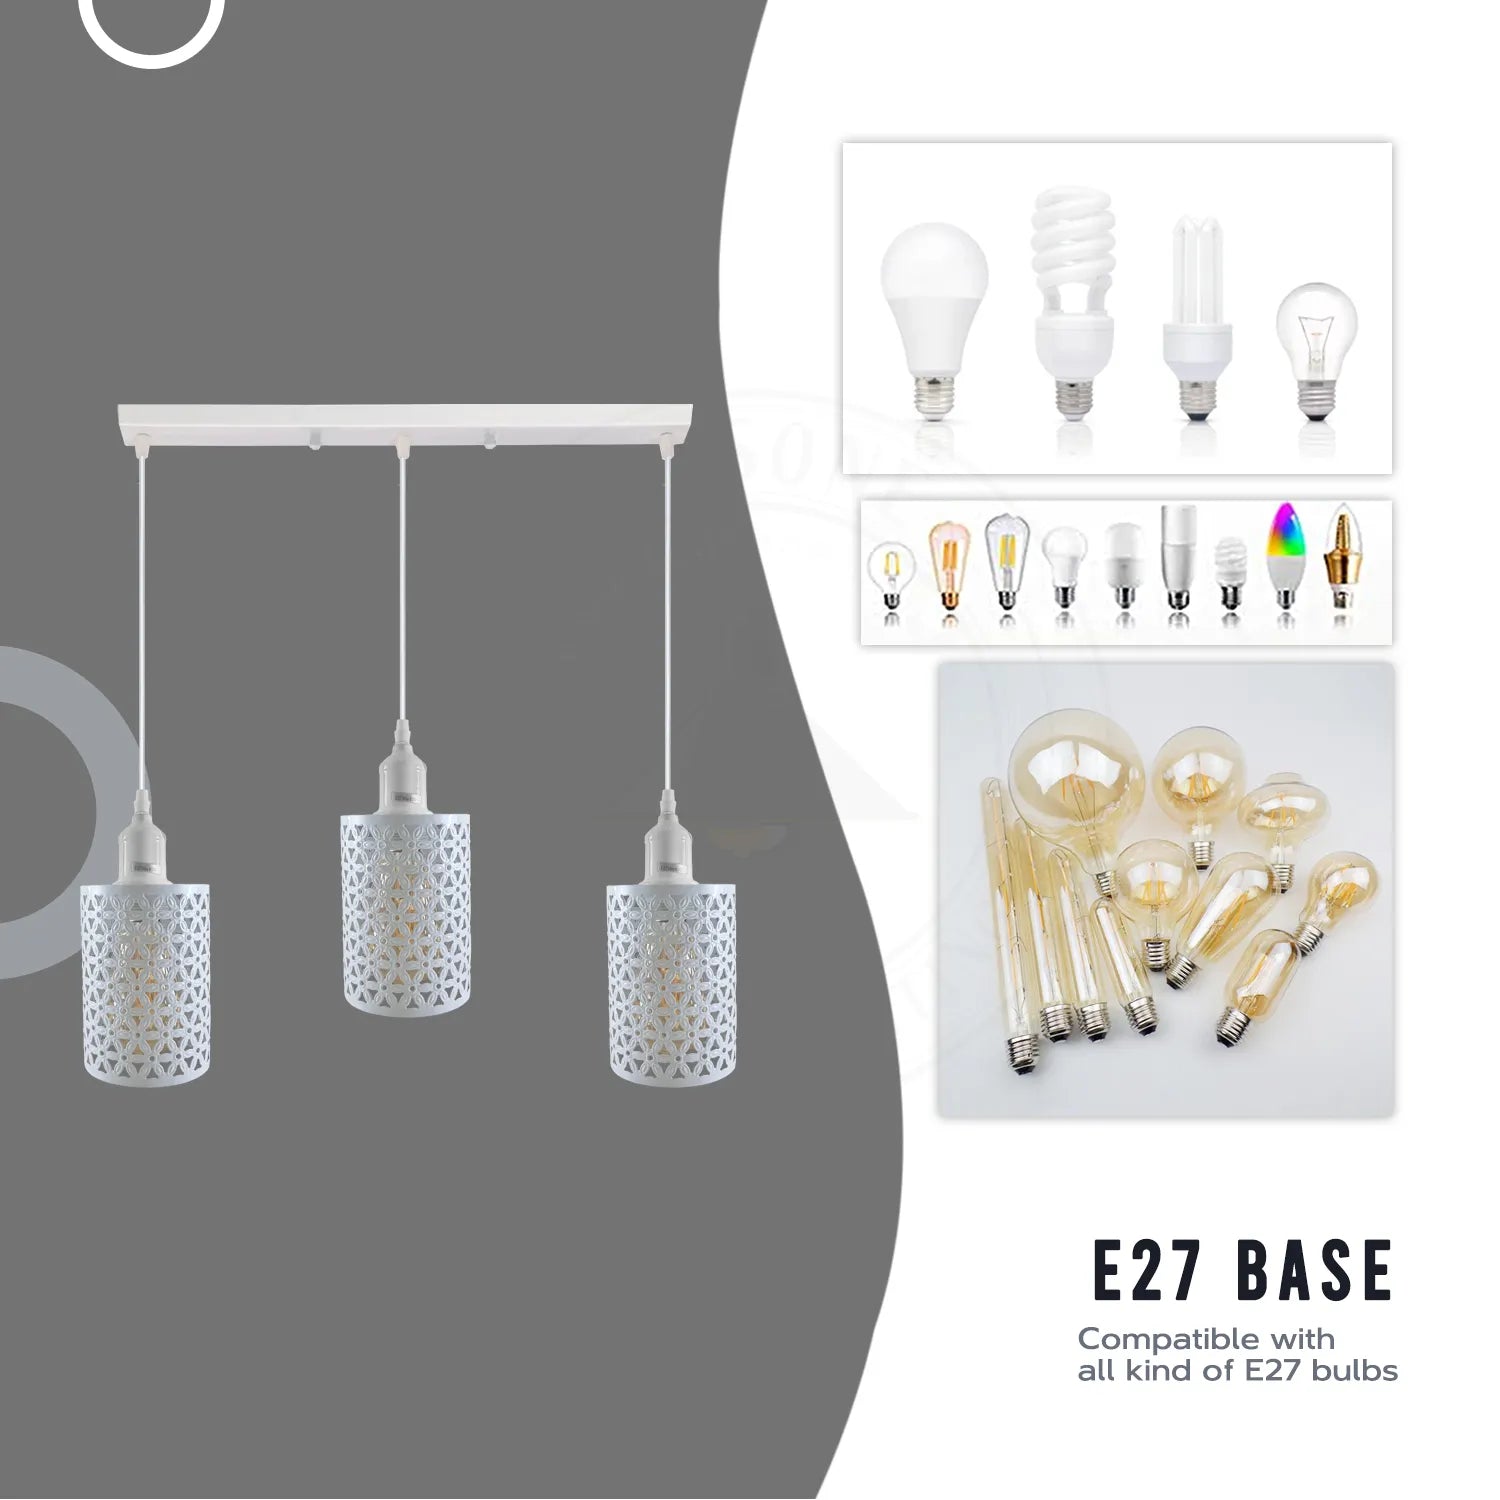 Industrial Pendant Lighting, Adjustable E27 Metal Cage Hanging Light Fixtures ~4327